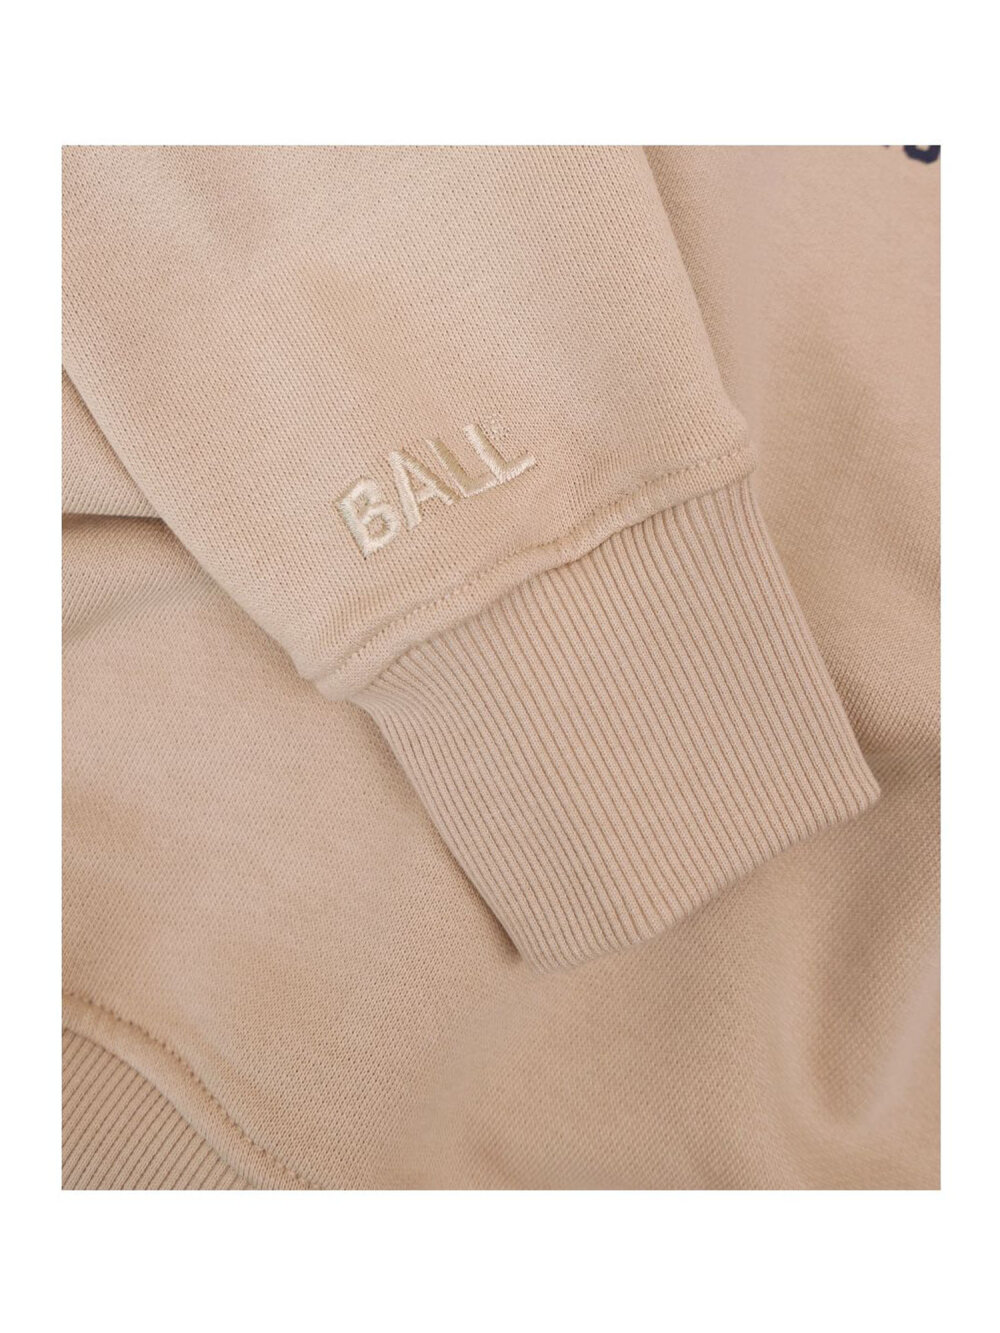 Ball - Smith Sweatshirt 